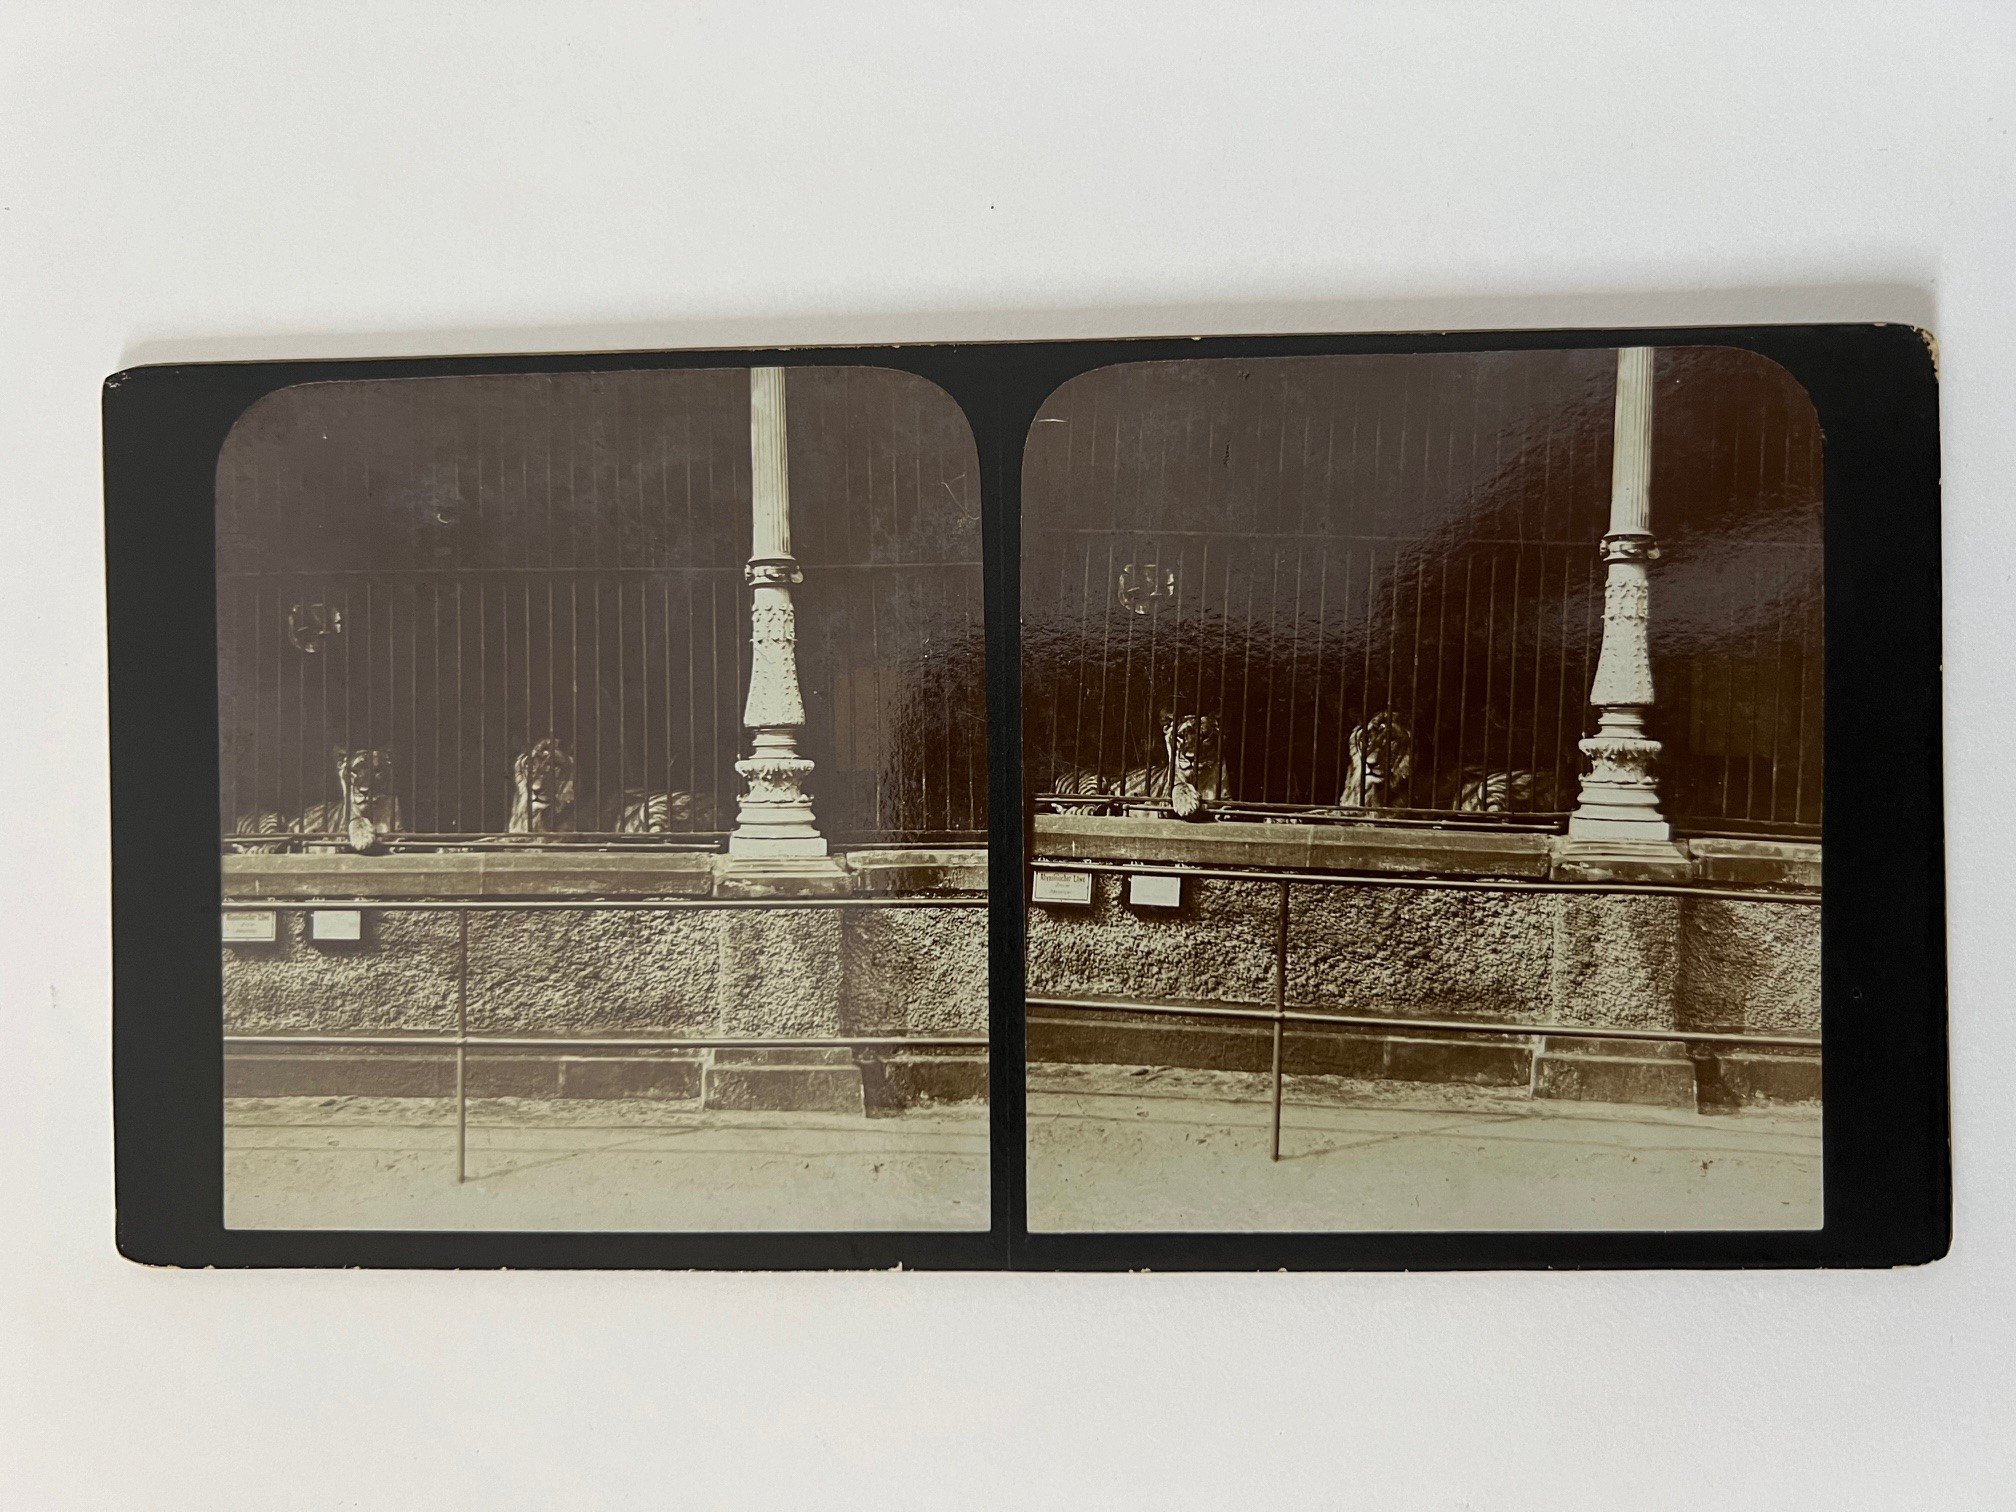 Stereobild, Unbekannter Fotograf, Frankfurt, Im Zoo, dat. 1902. (Taunus-Rhein-Main - Regionalgeschichtliche Sammlung Dr. Stefan Naas CC BY-NC-SA)